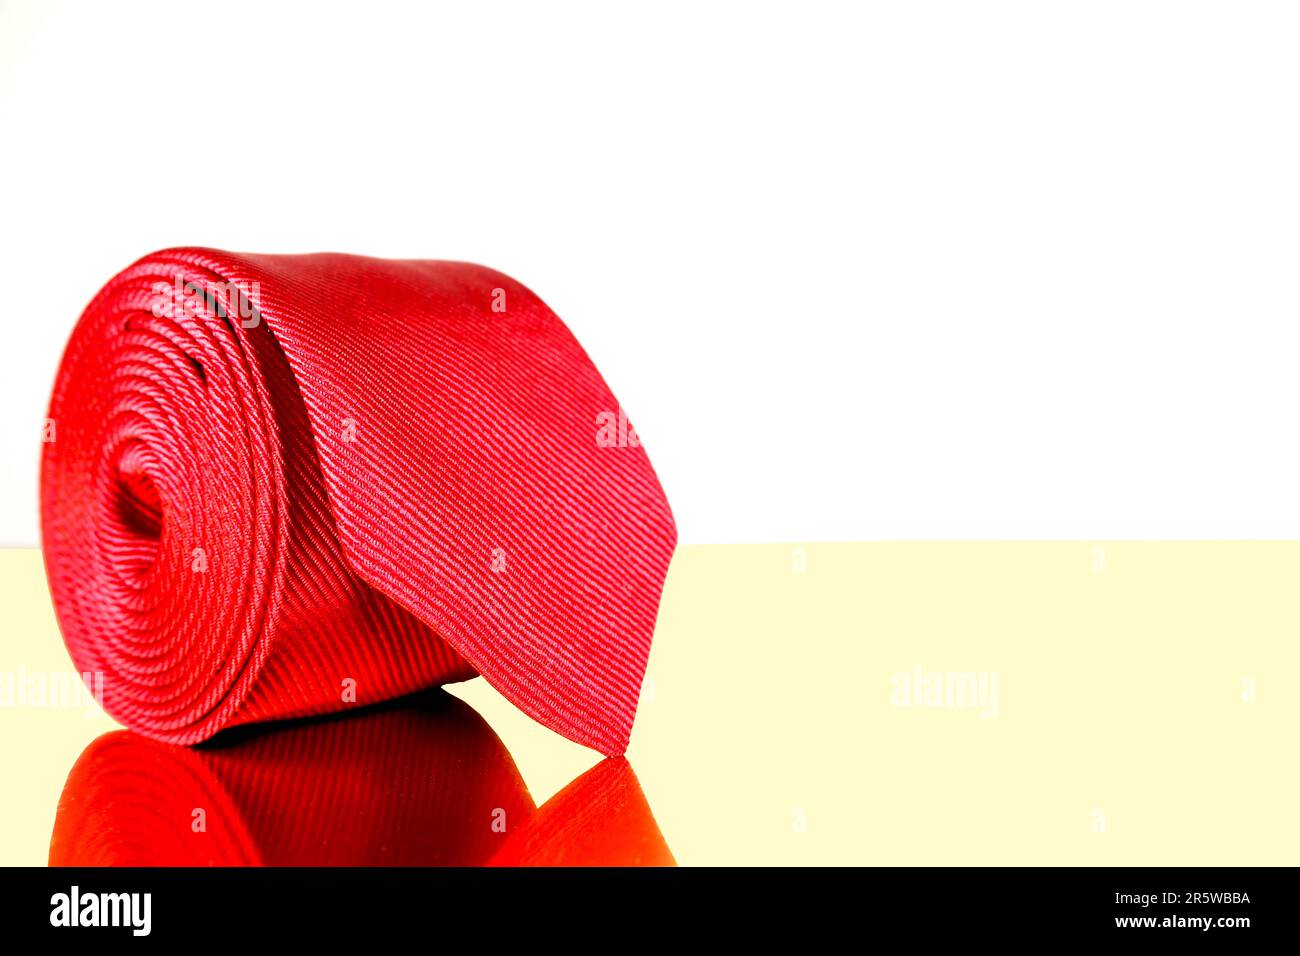 Un gros plan de la cravate d'un homme drapée sur un sac en cuir marron, mettant en valeur les couleurs et les textures des deux articles Banque D'Images